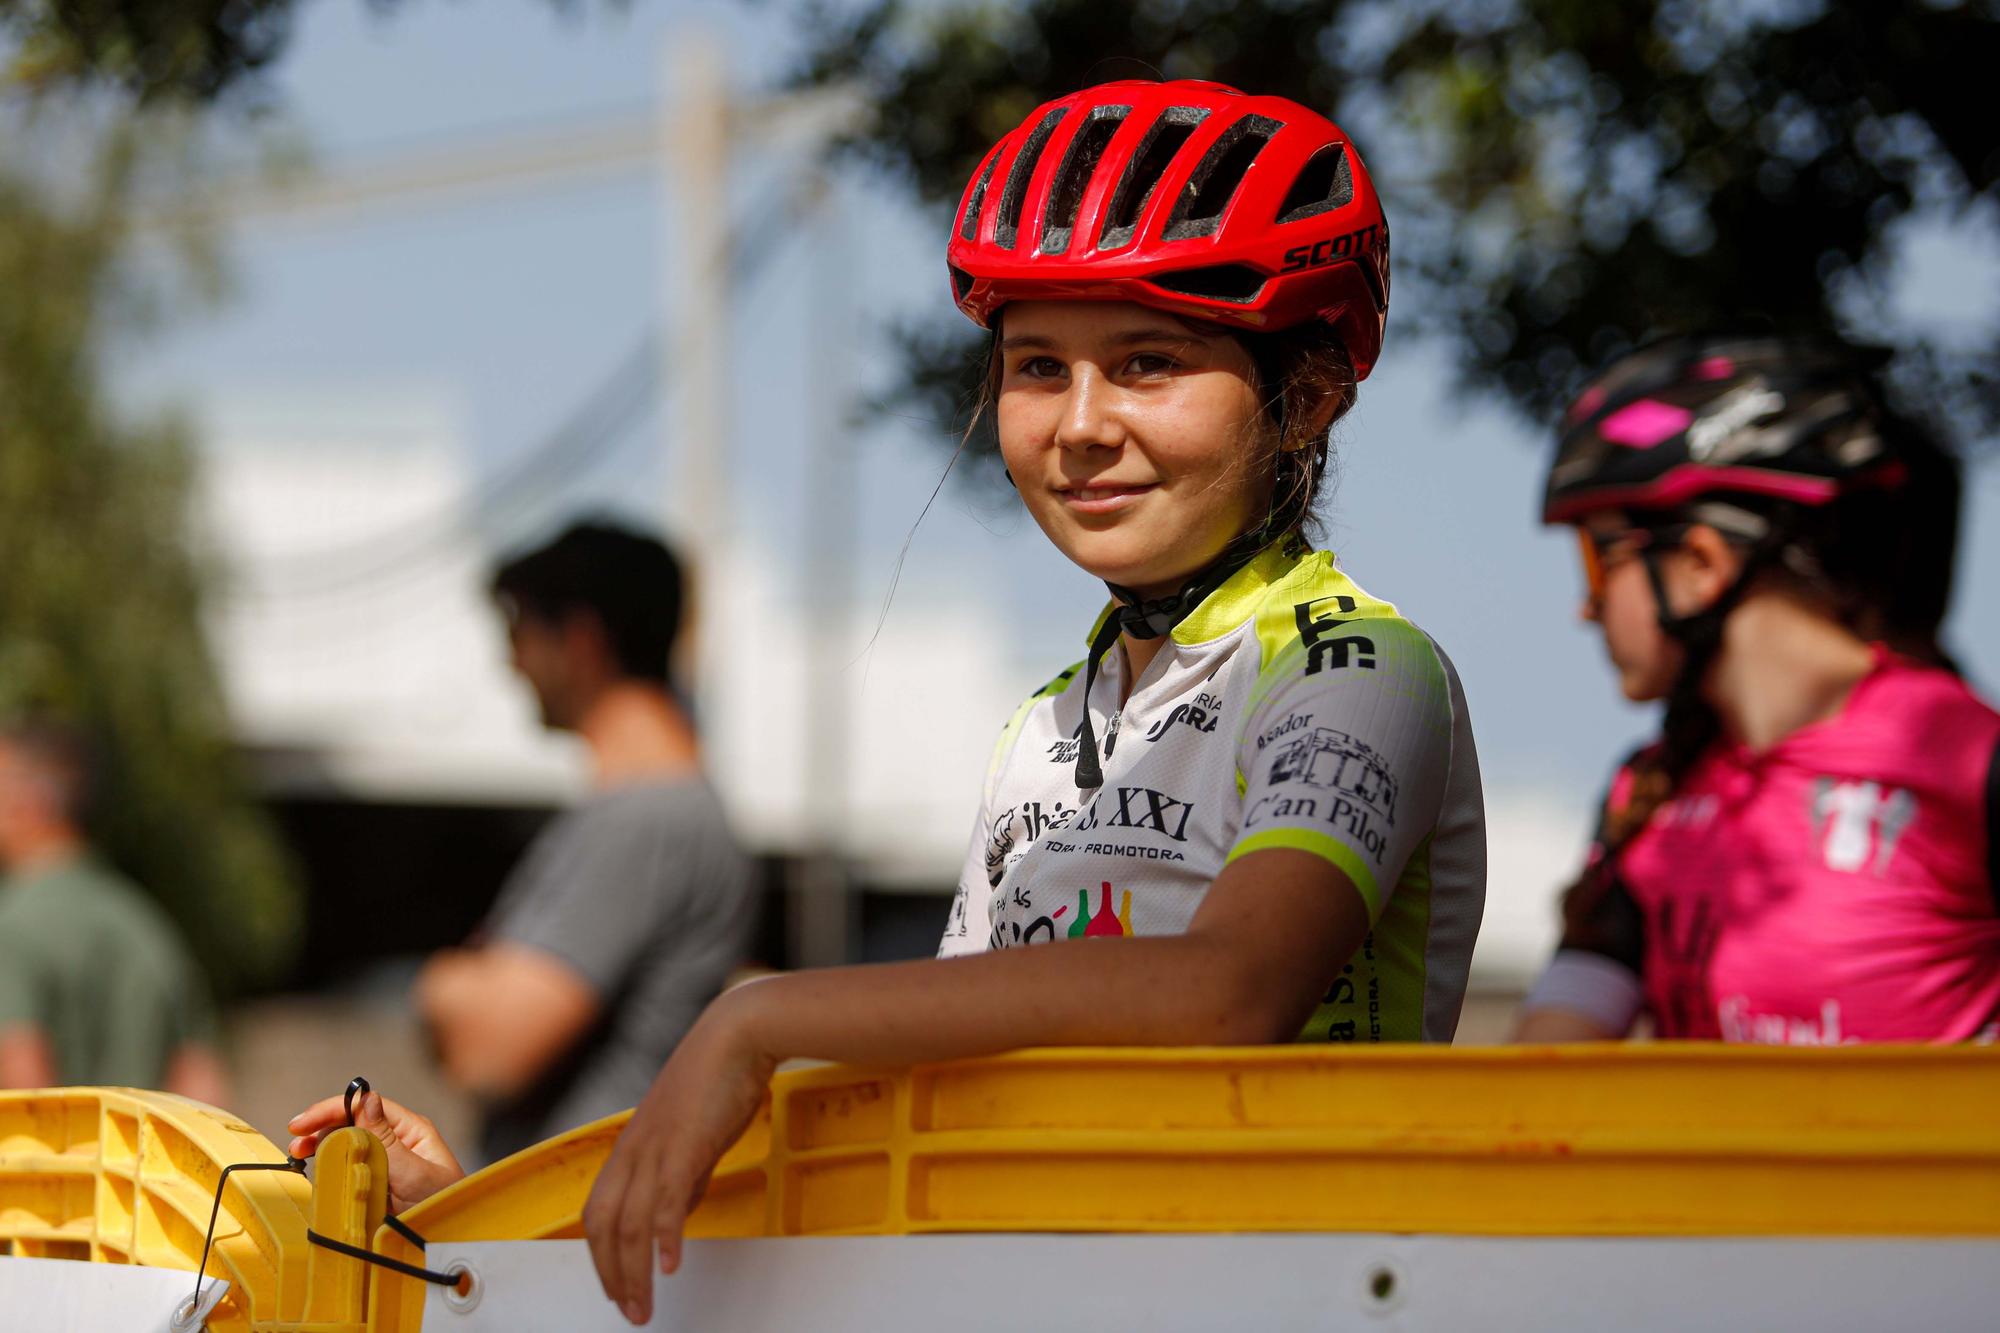 Los más pequeños de Ibiza aprenden a manejar con Bicykids